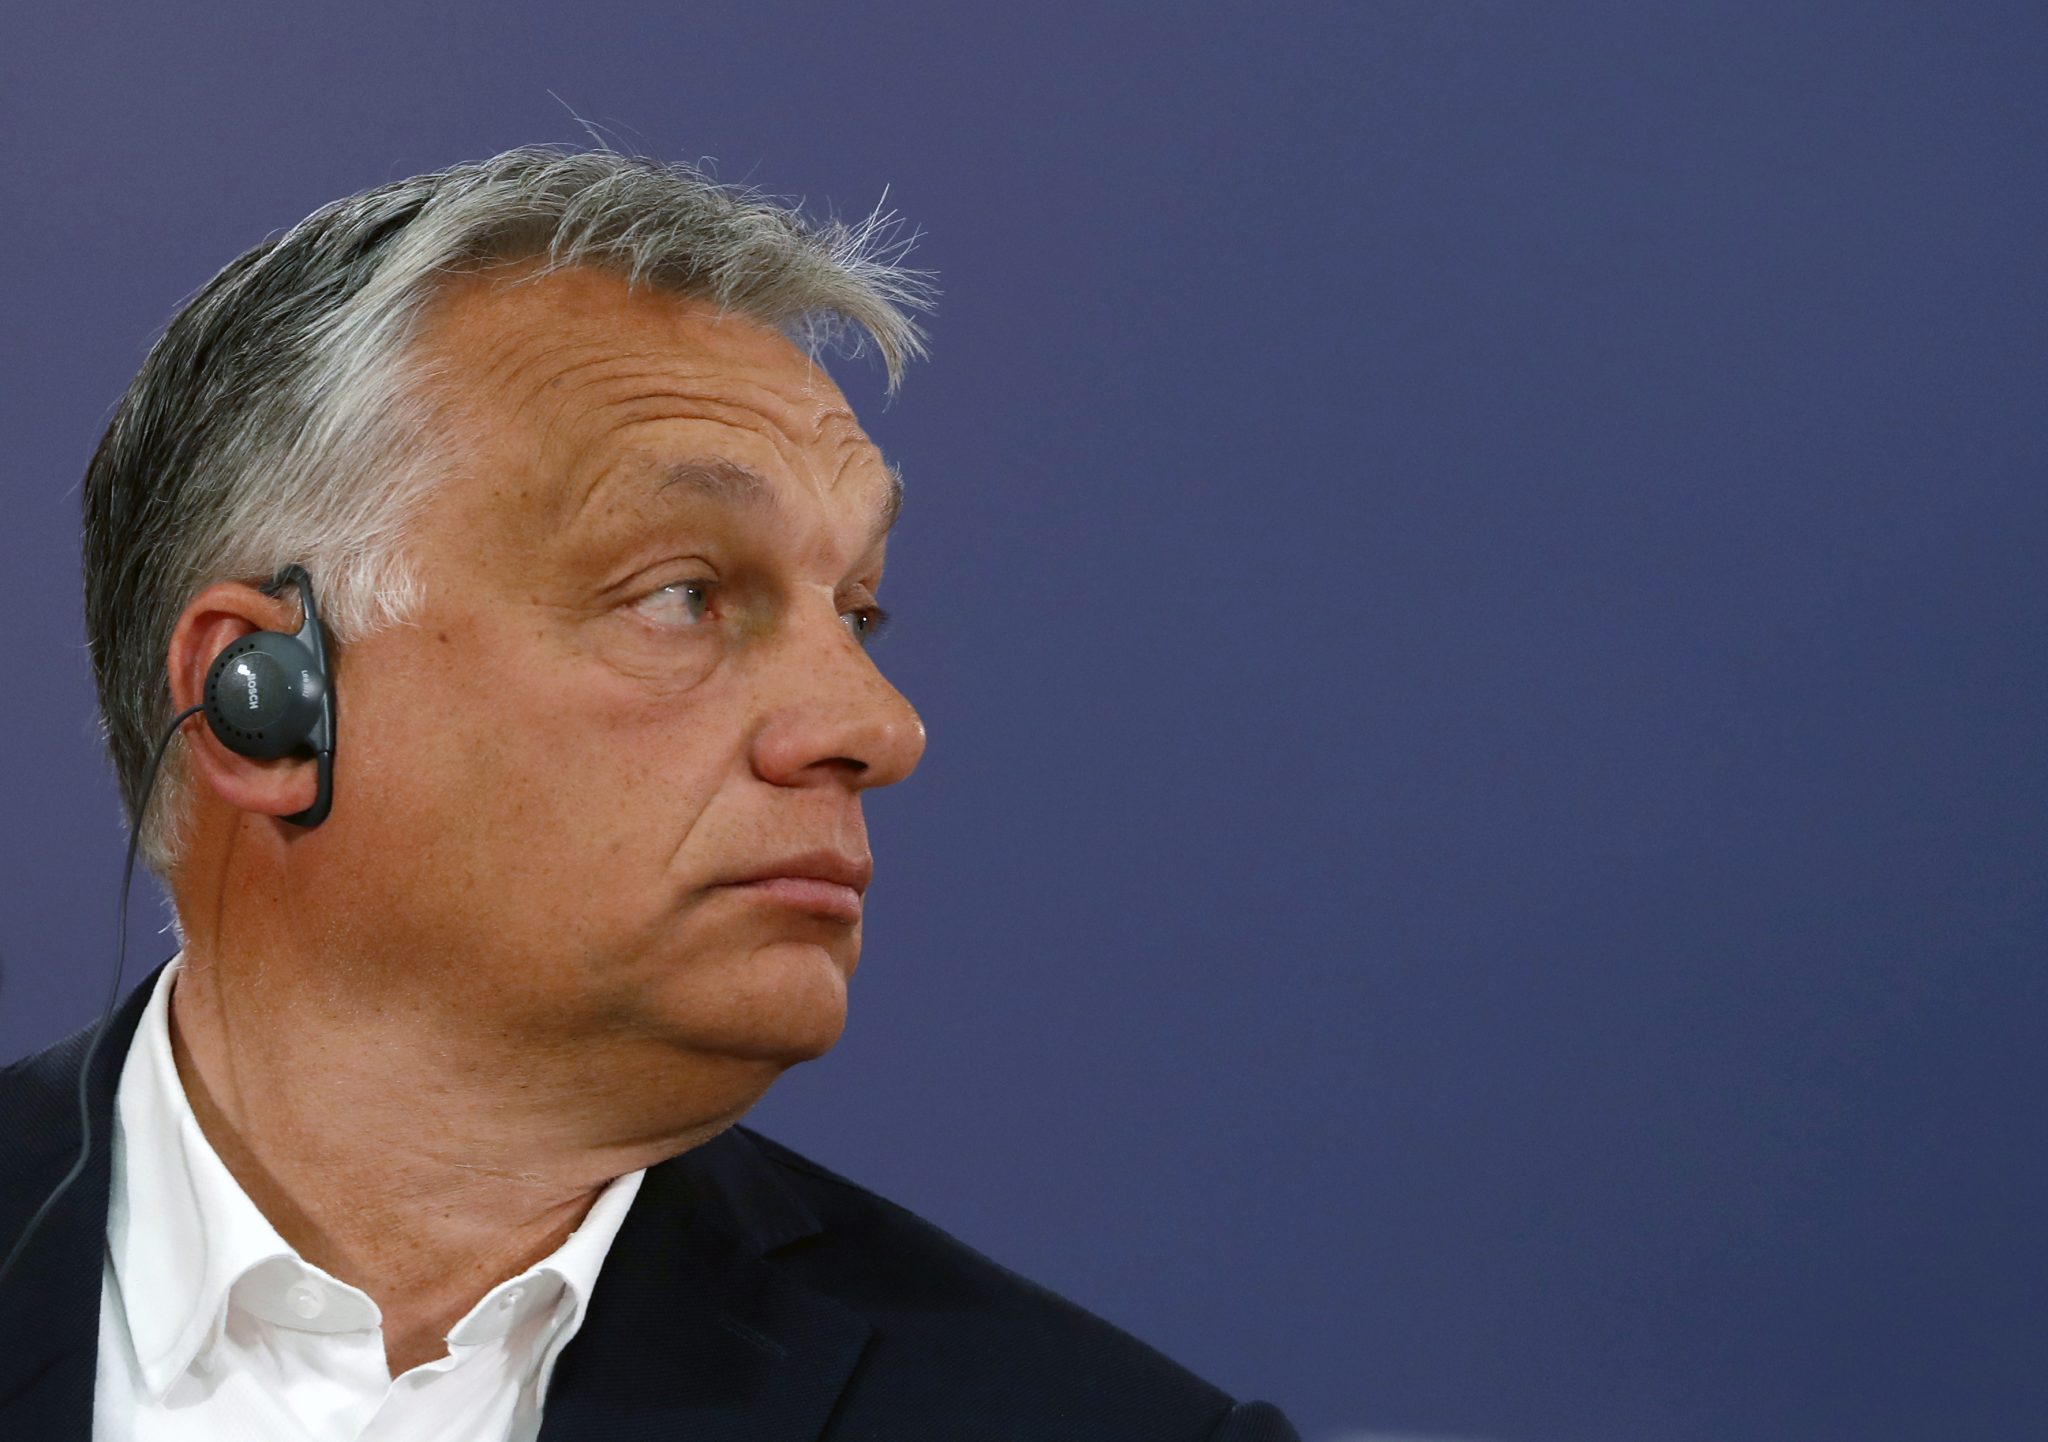 Das Urteil richtet sich gegen die NGO-Maßnahmen von Ungarns Ministerpräsident Viktor Orbán Foto: picture alliance / AP Photo